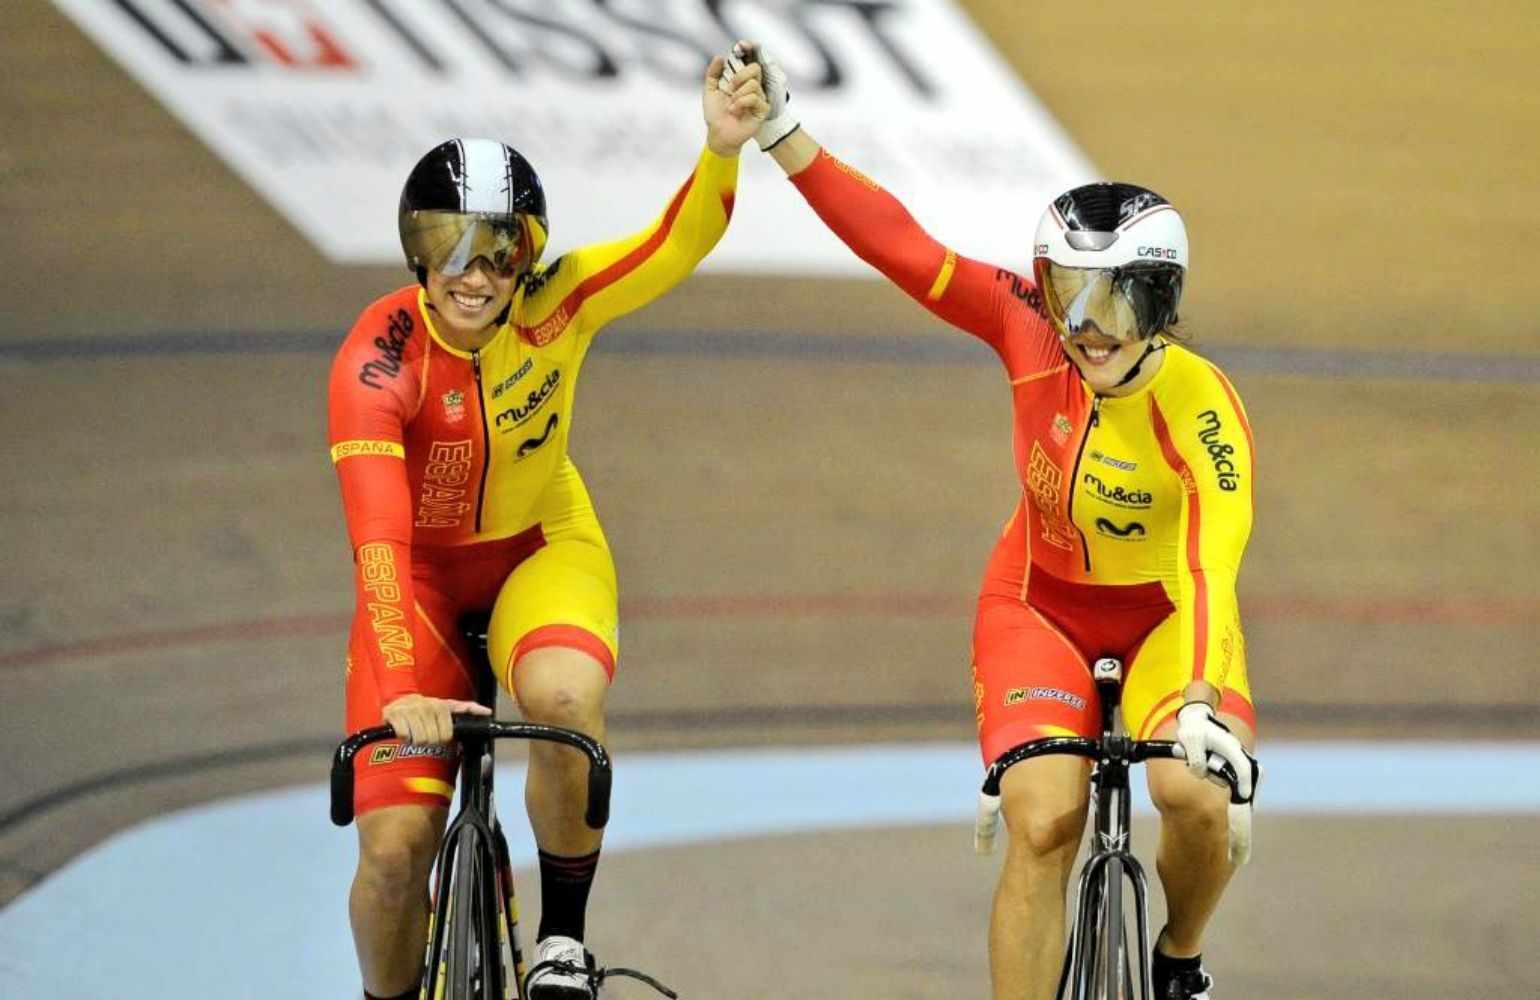 Helena Casas y Tania Calvo ganan el oro en velocidad por equipos en la Copa del Mundo